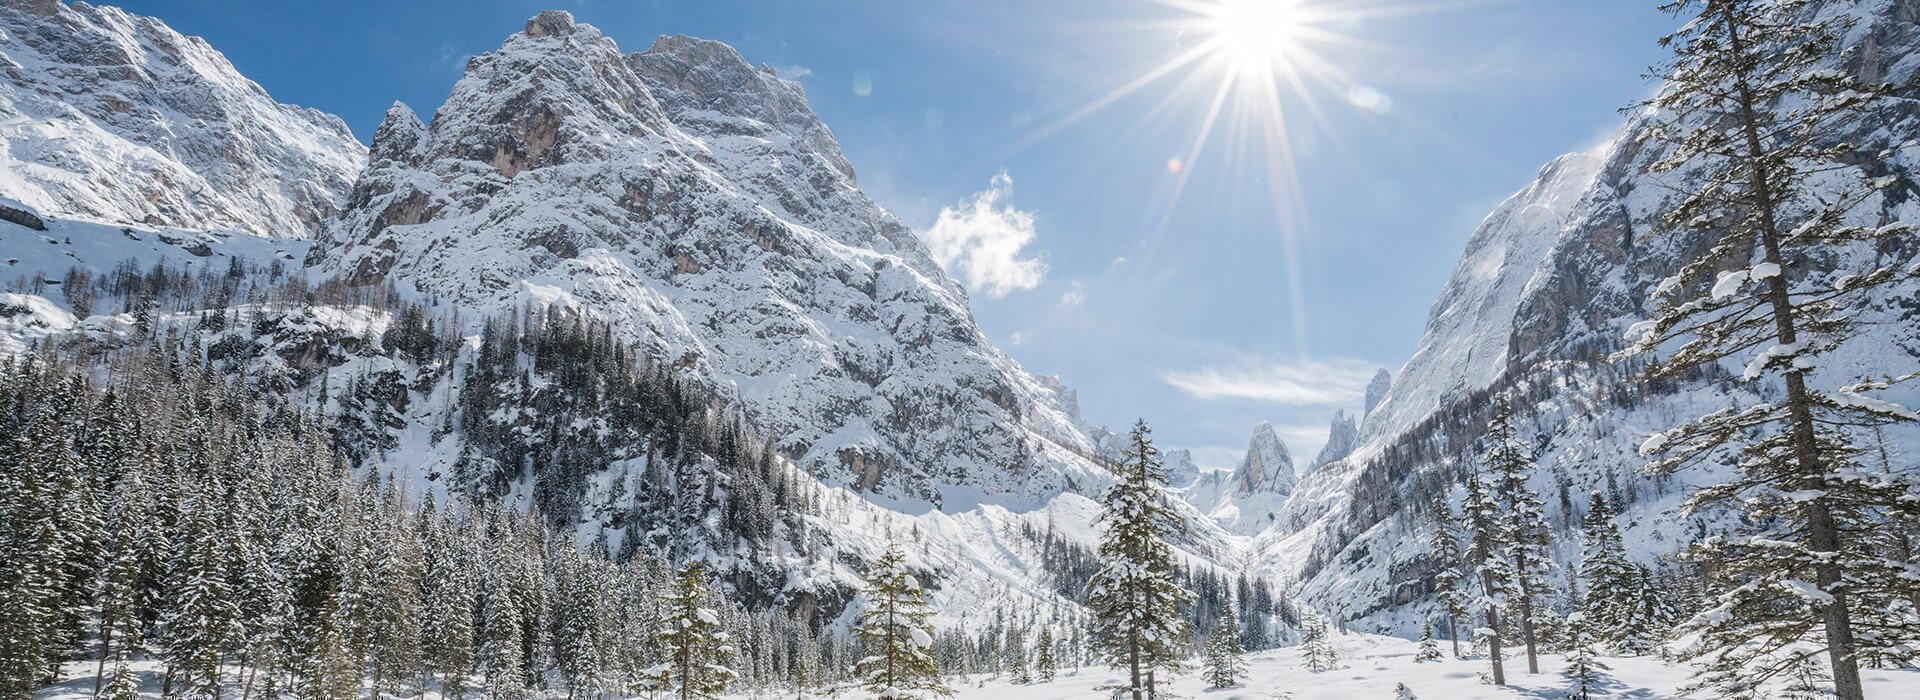 South Tyrol ski areas - Sexten